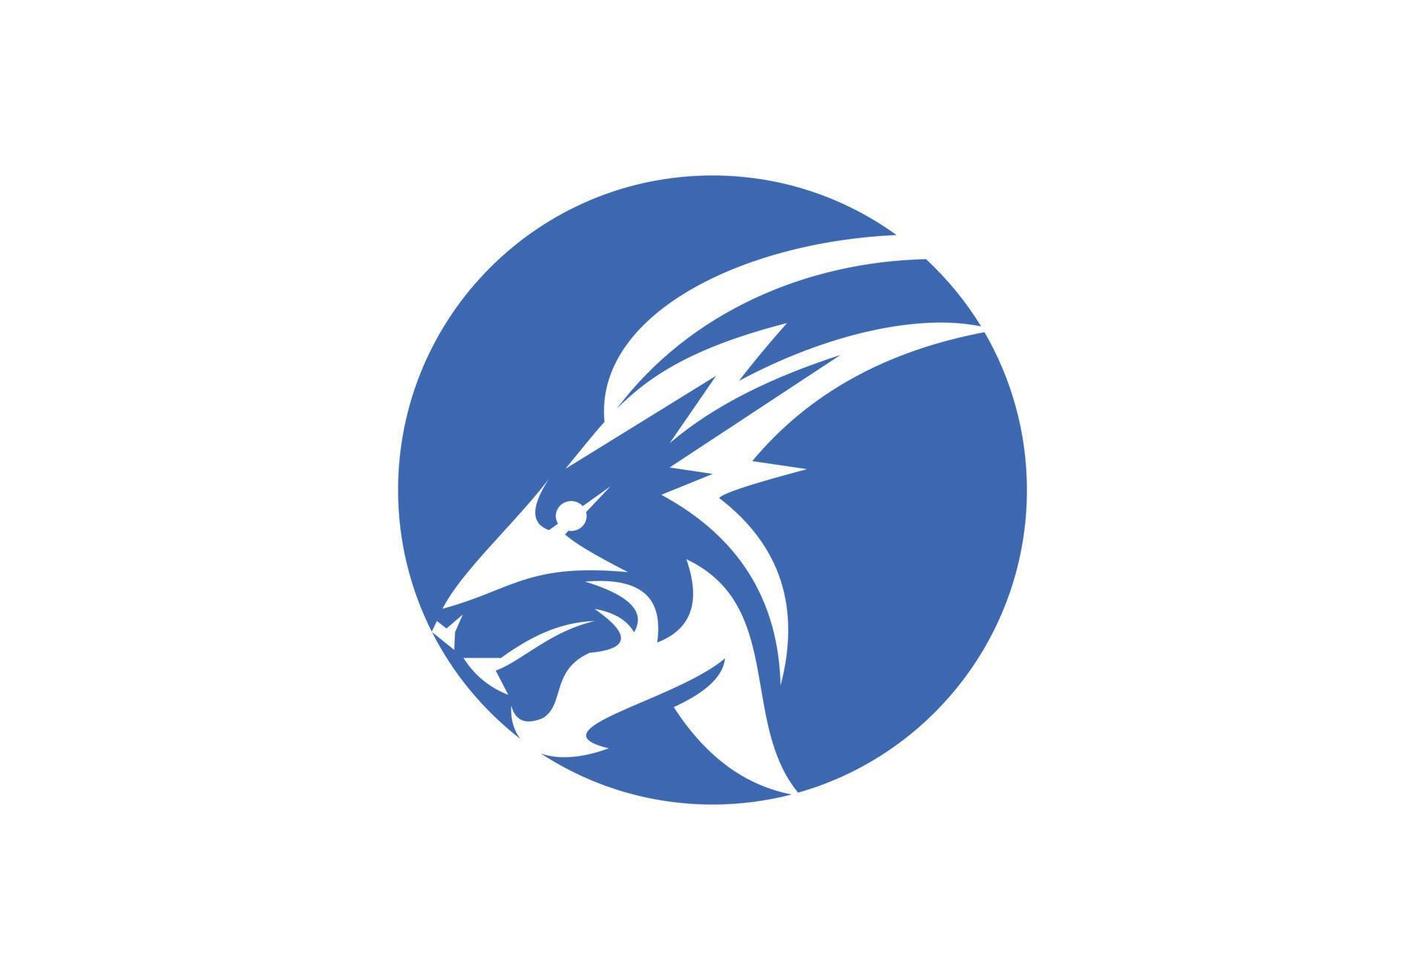 das Löwen-Logo-Design, Vektor-Design-Vorlage vektor